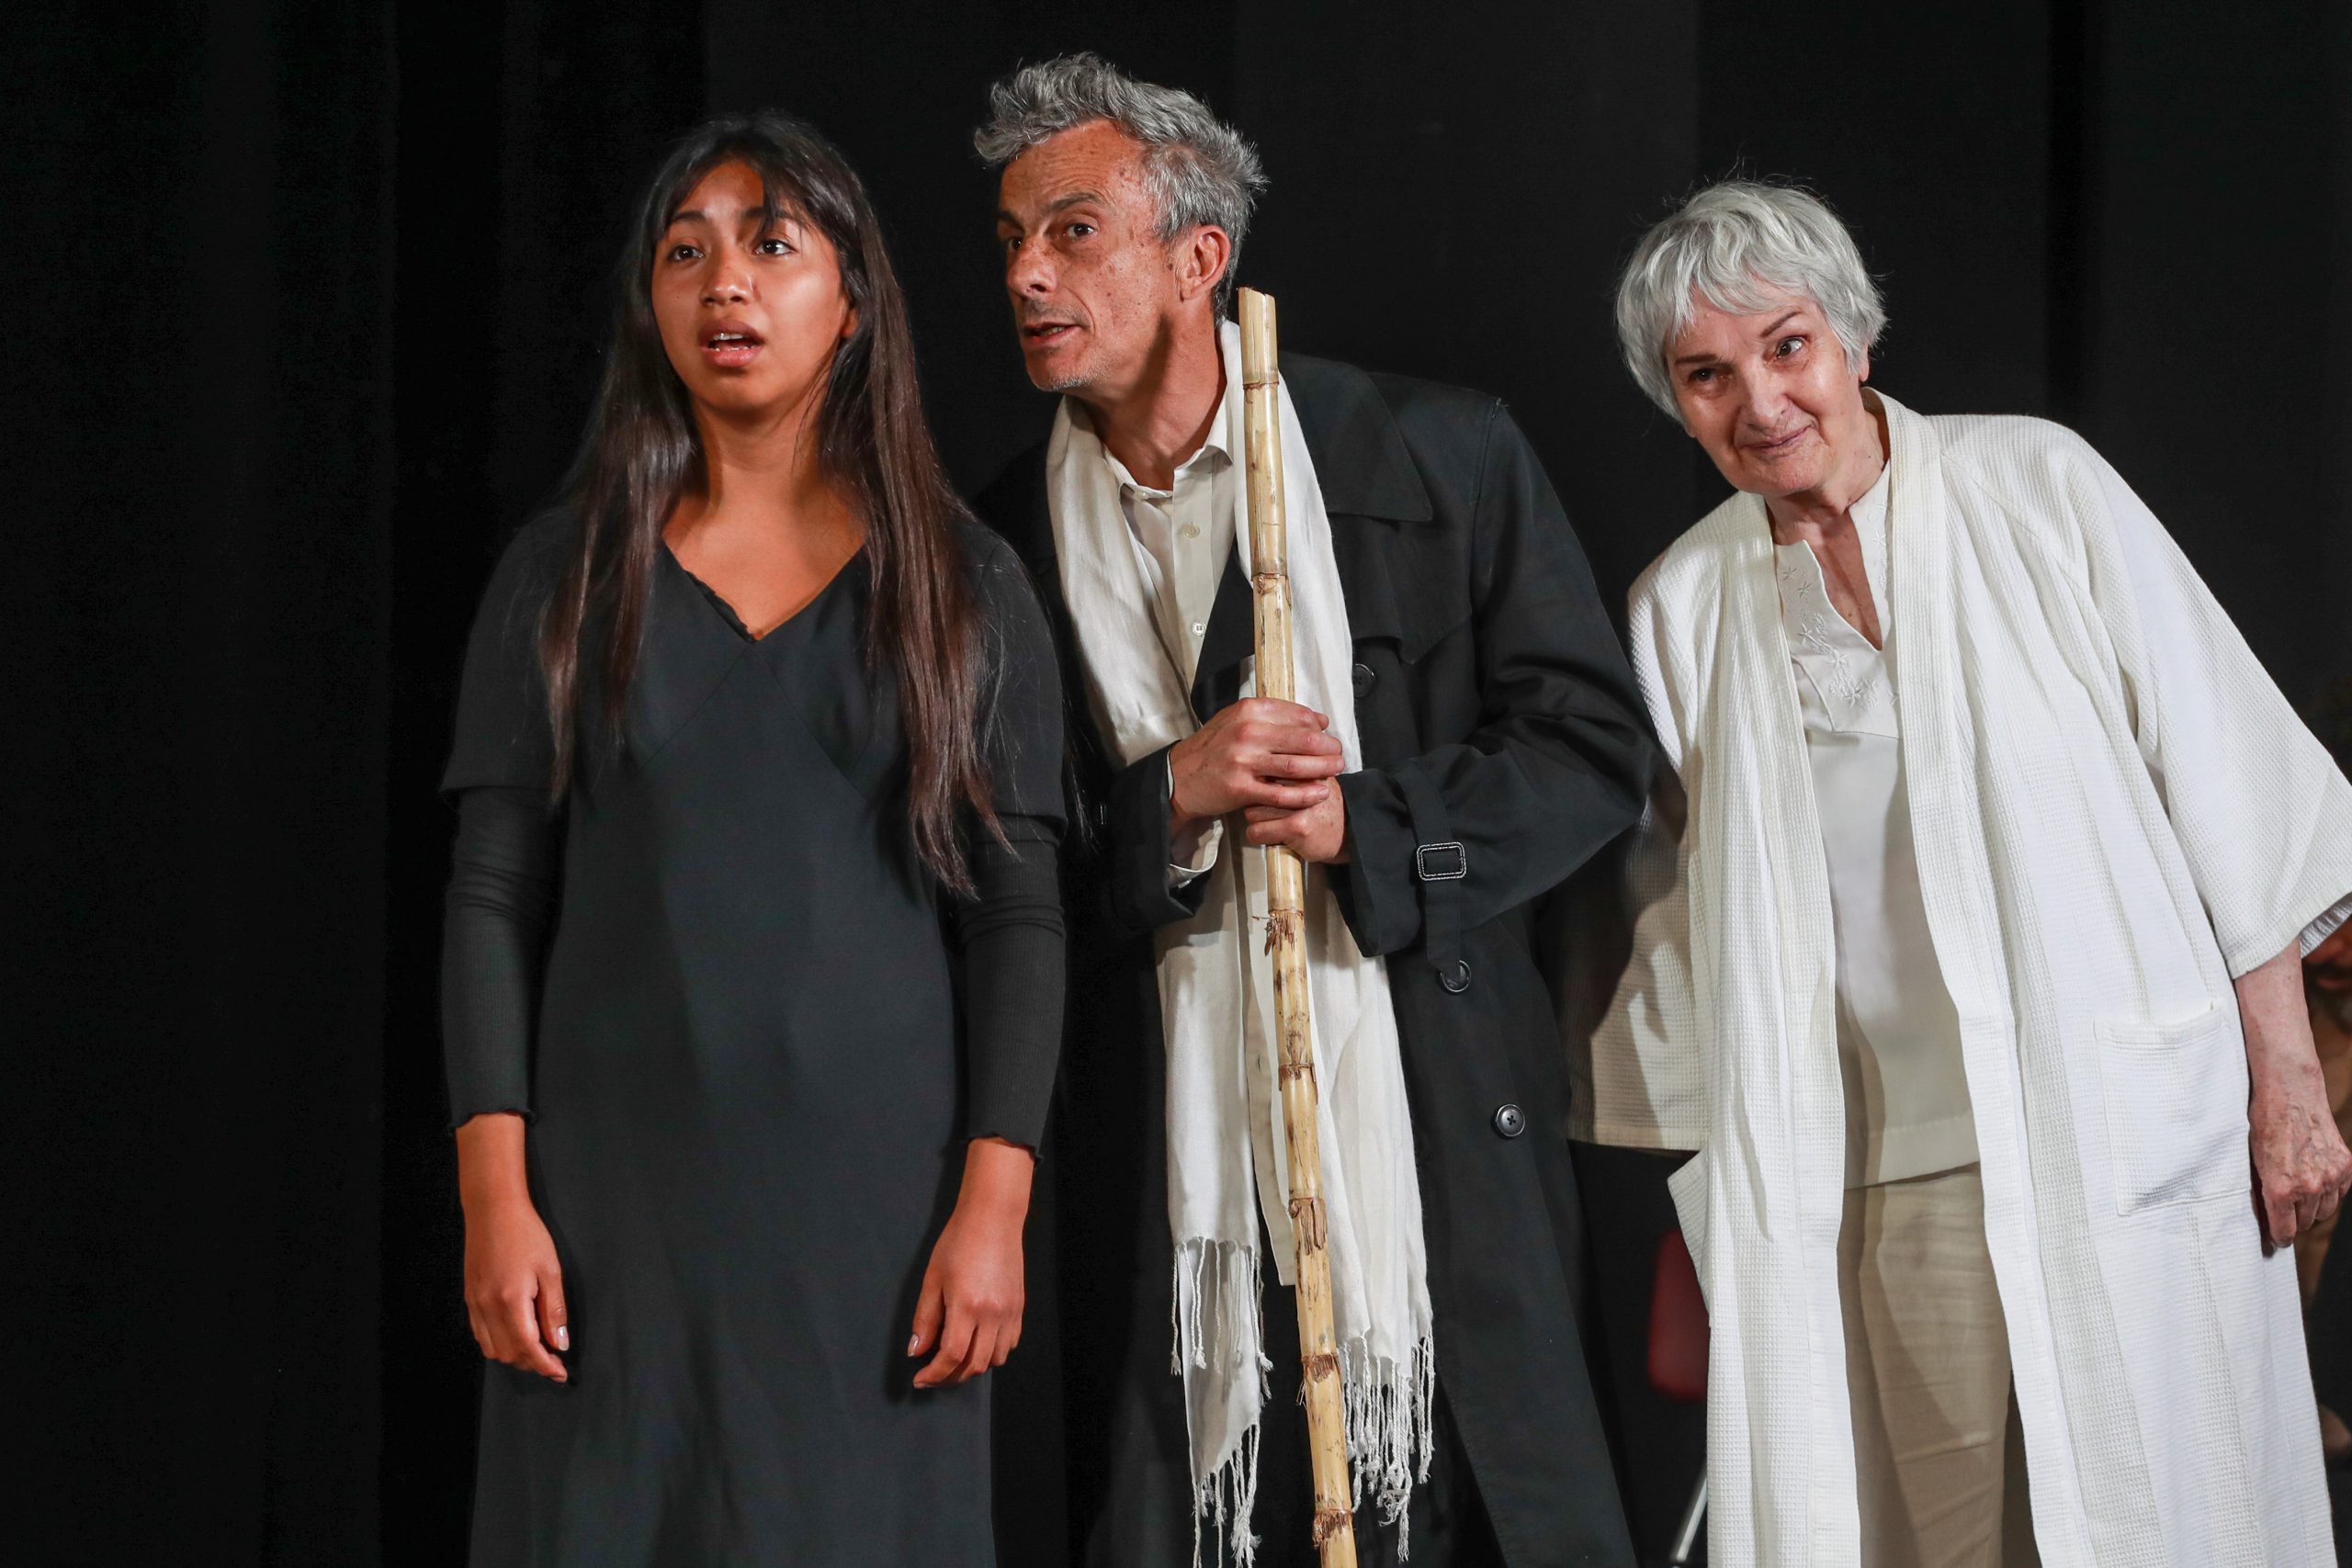  Vuelve al Teatro Nacional Chileno «Tempest Project», el clásico de Shakespeare bajo la co-dirección de Peter Brook y Marie-Hélène Estienne